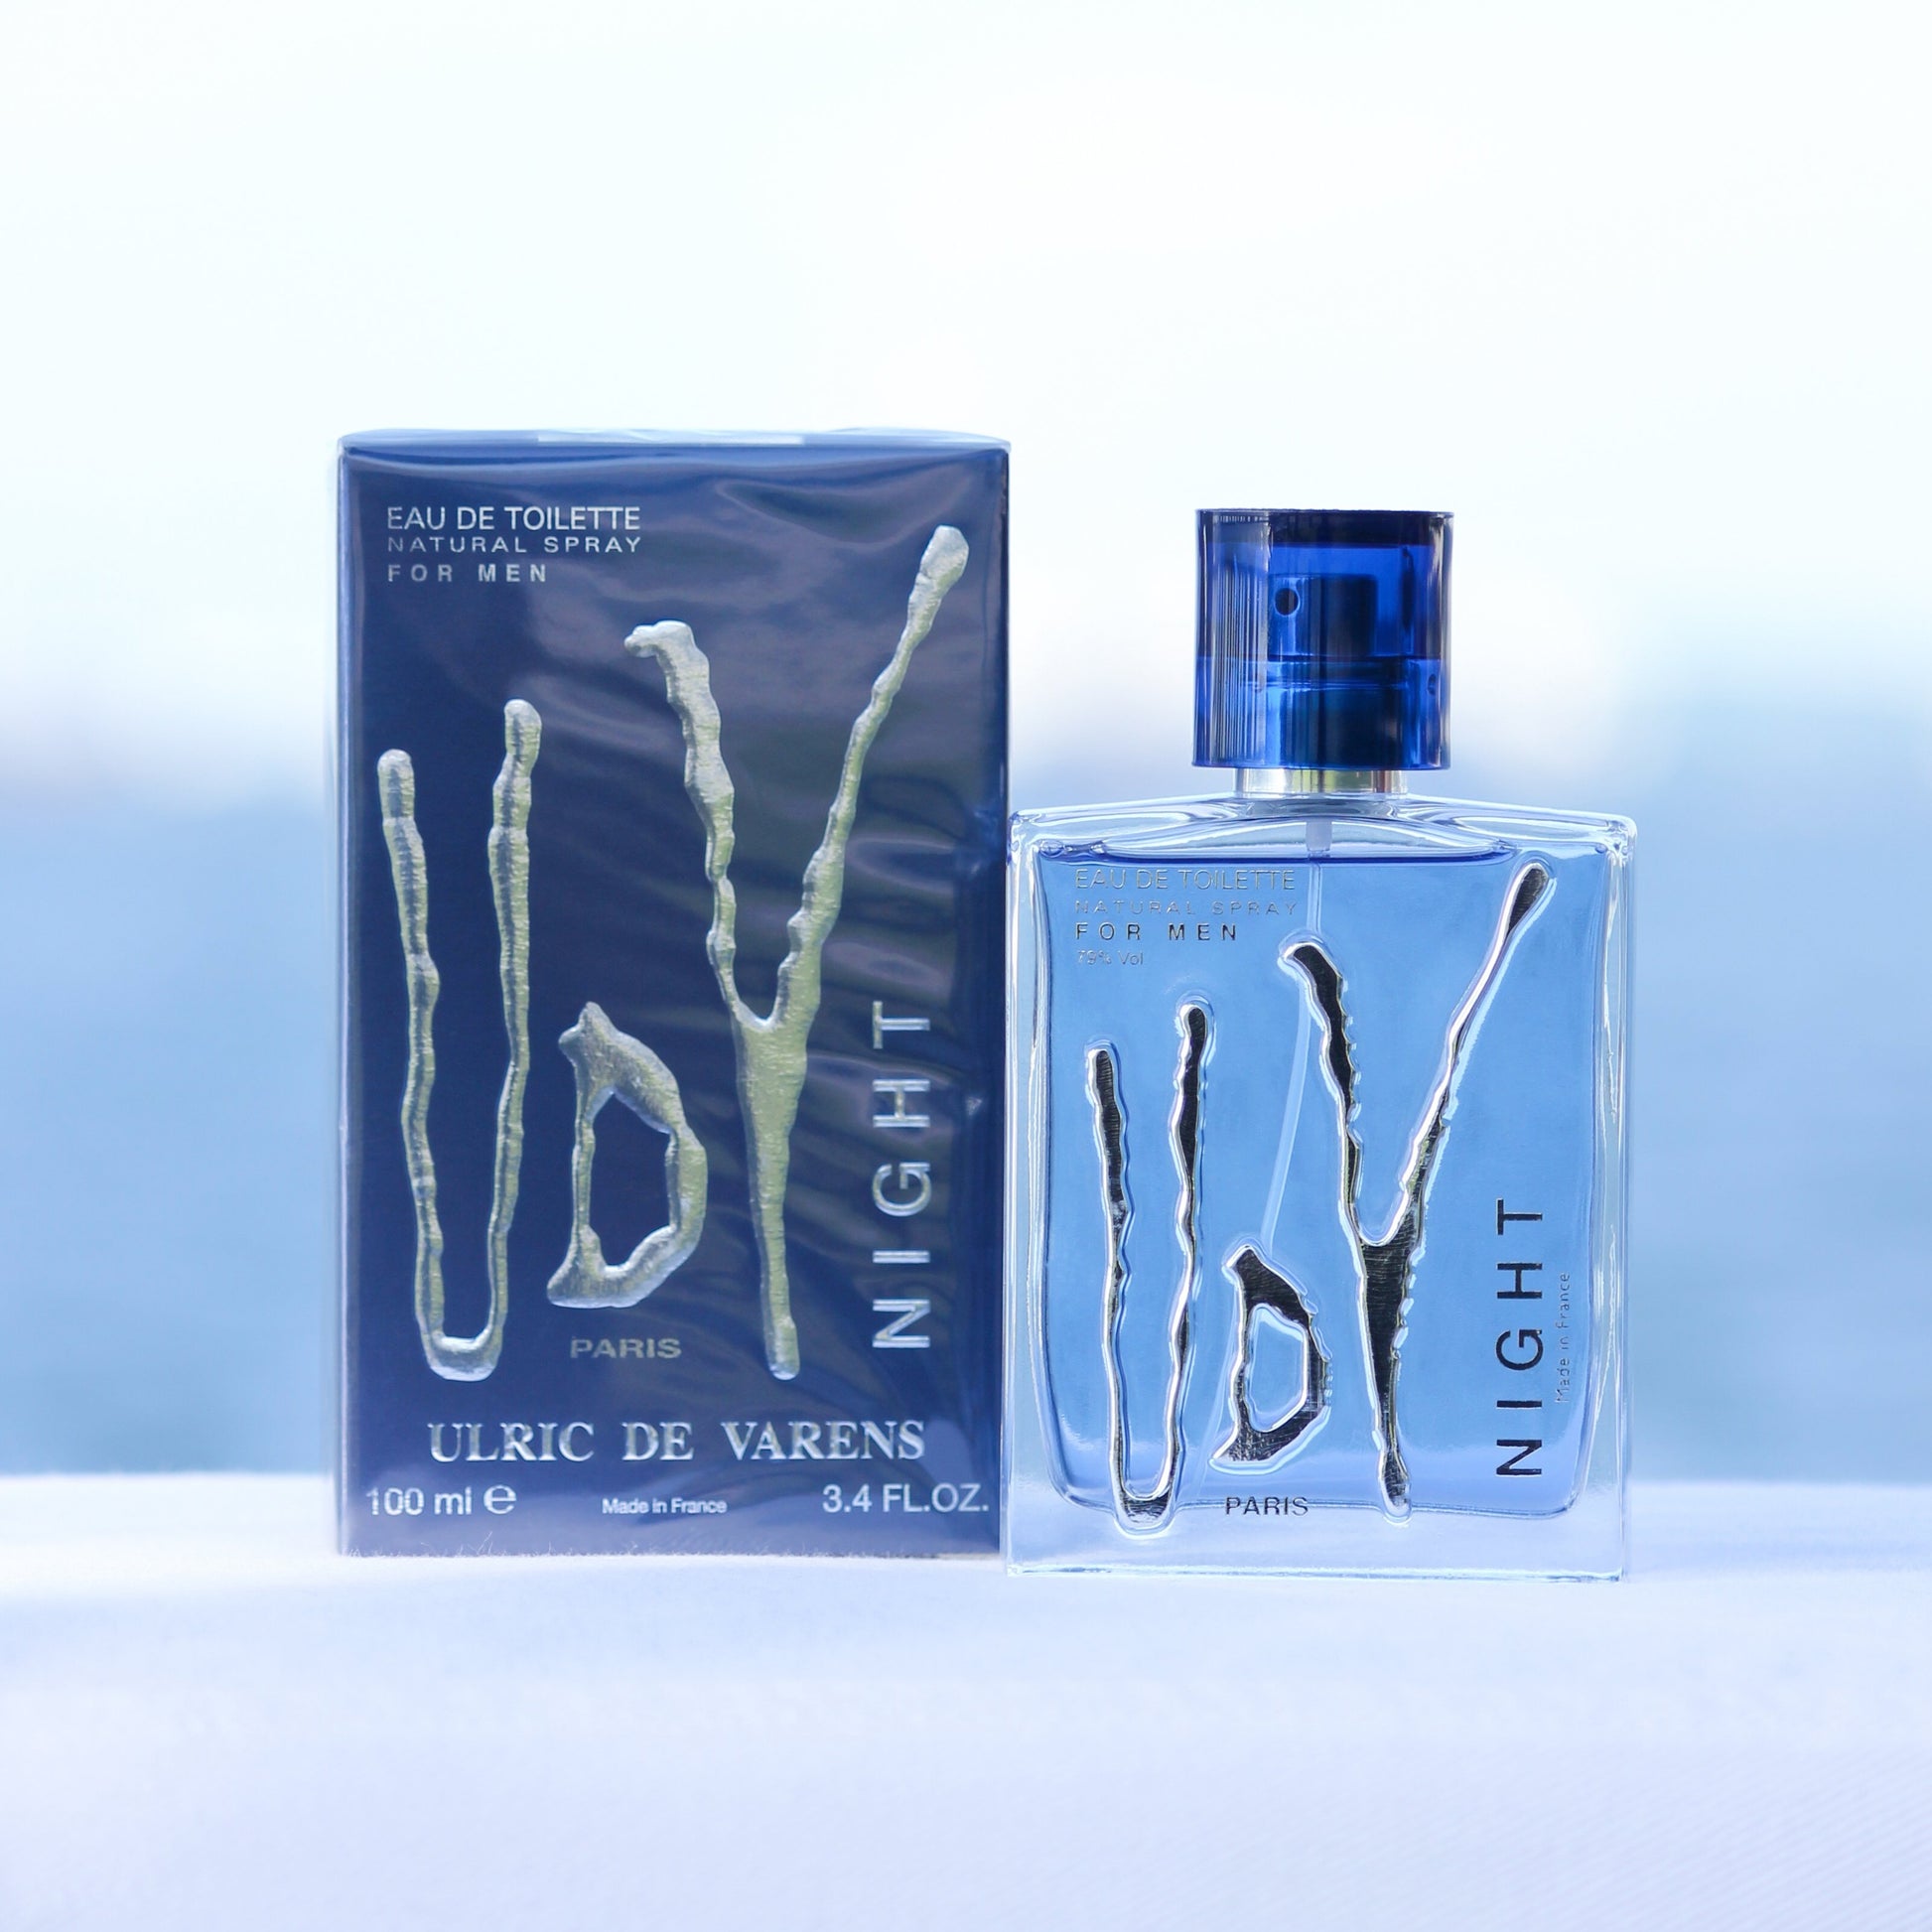 Ulric De Varens UDV Night men's perfume 3.4 EDT in front of beach